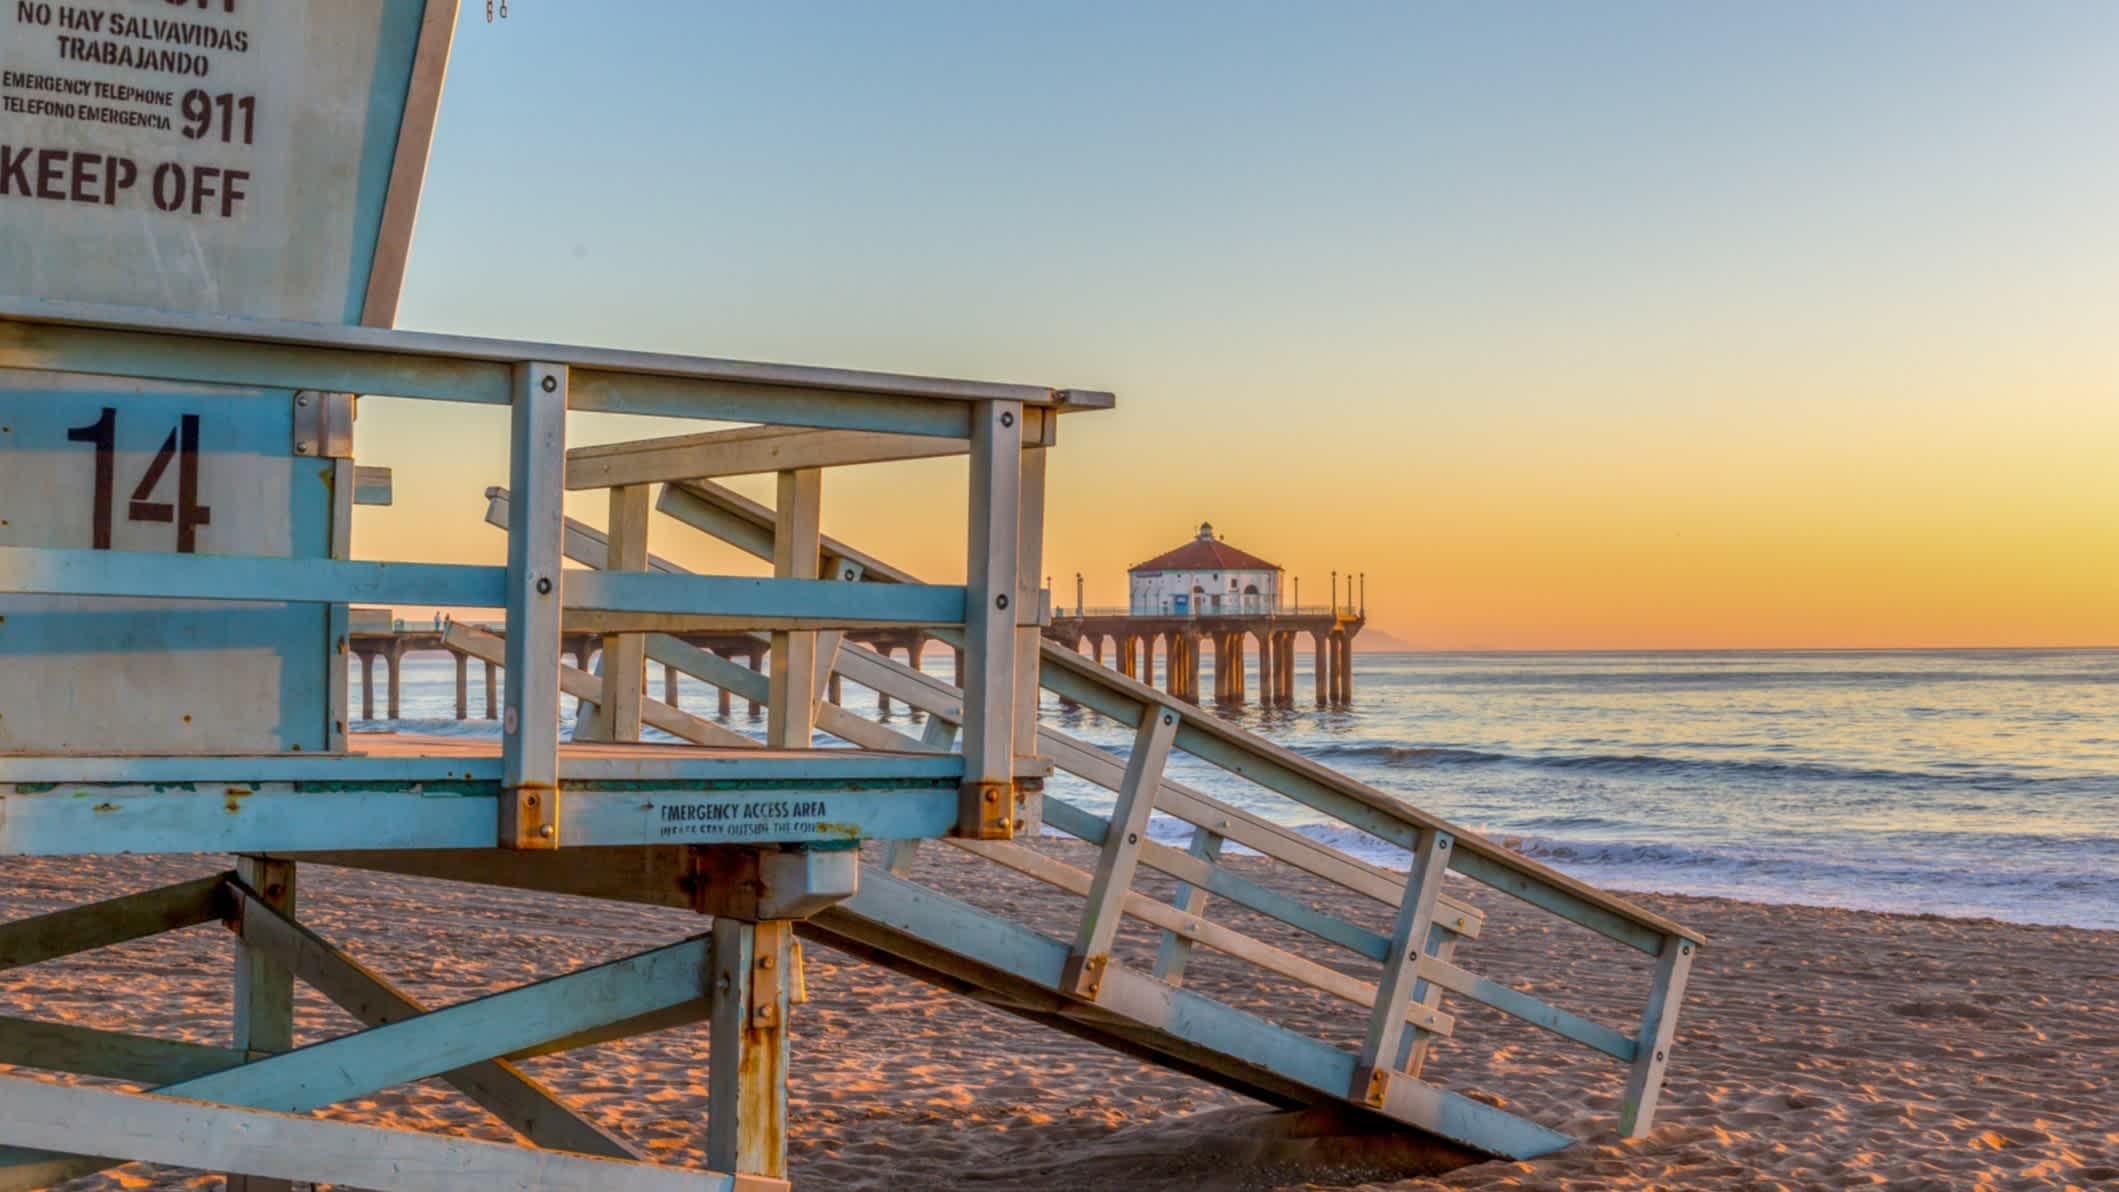 Der Strand Hermosa Beach in den USA, Kalifornien bei Sonnendämmerung und mit dem Meer, einem Wachturm aus Holz sowie einem Steg im Bild.